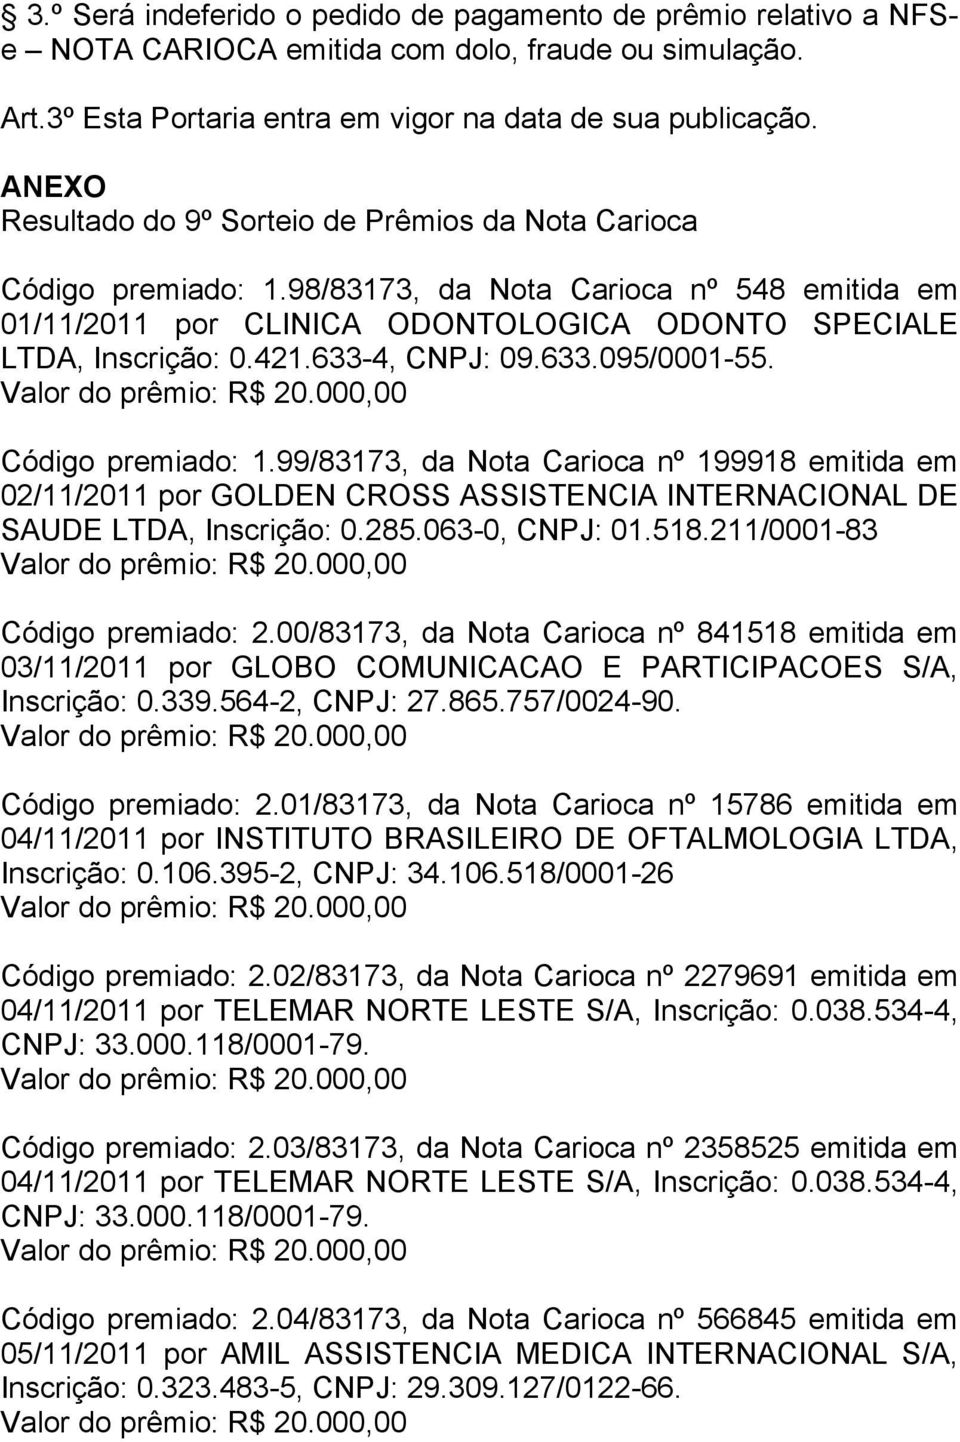 633-4, CNPJ: 09.633.095/0001-55. Código premiado: 1.99/83173, da Nota Carioca nº 199918 emitida em 02/11/2011 por GOLDEN CROSS ASSISTENCIA INTERNACIONAL DE SAUDE LTDA, Inscrição: 0.285.